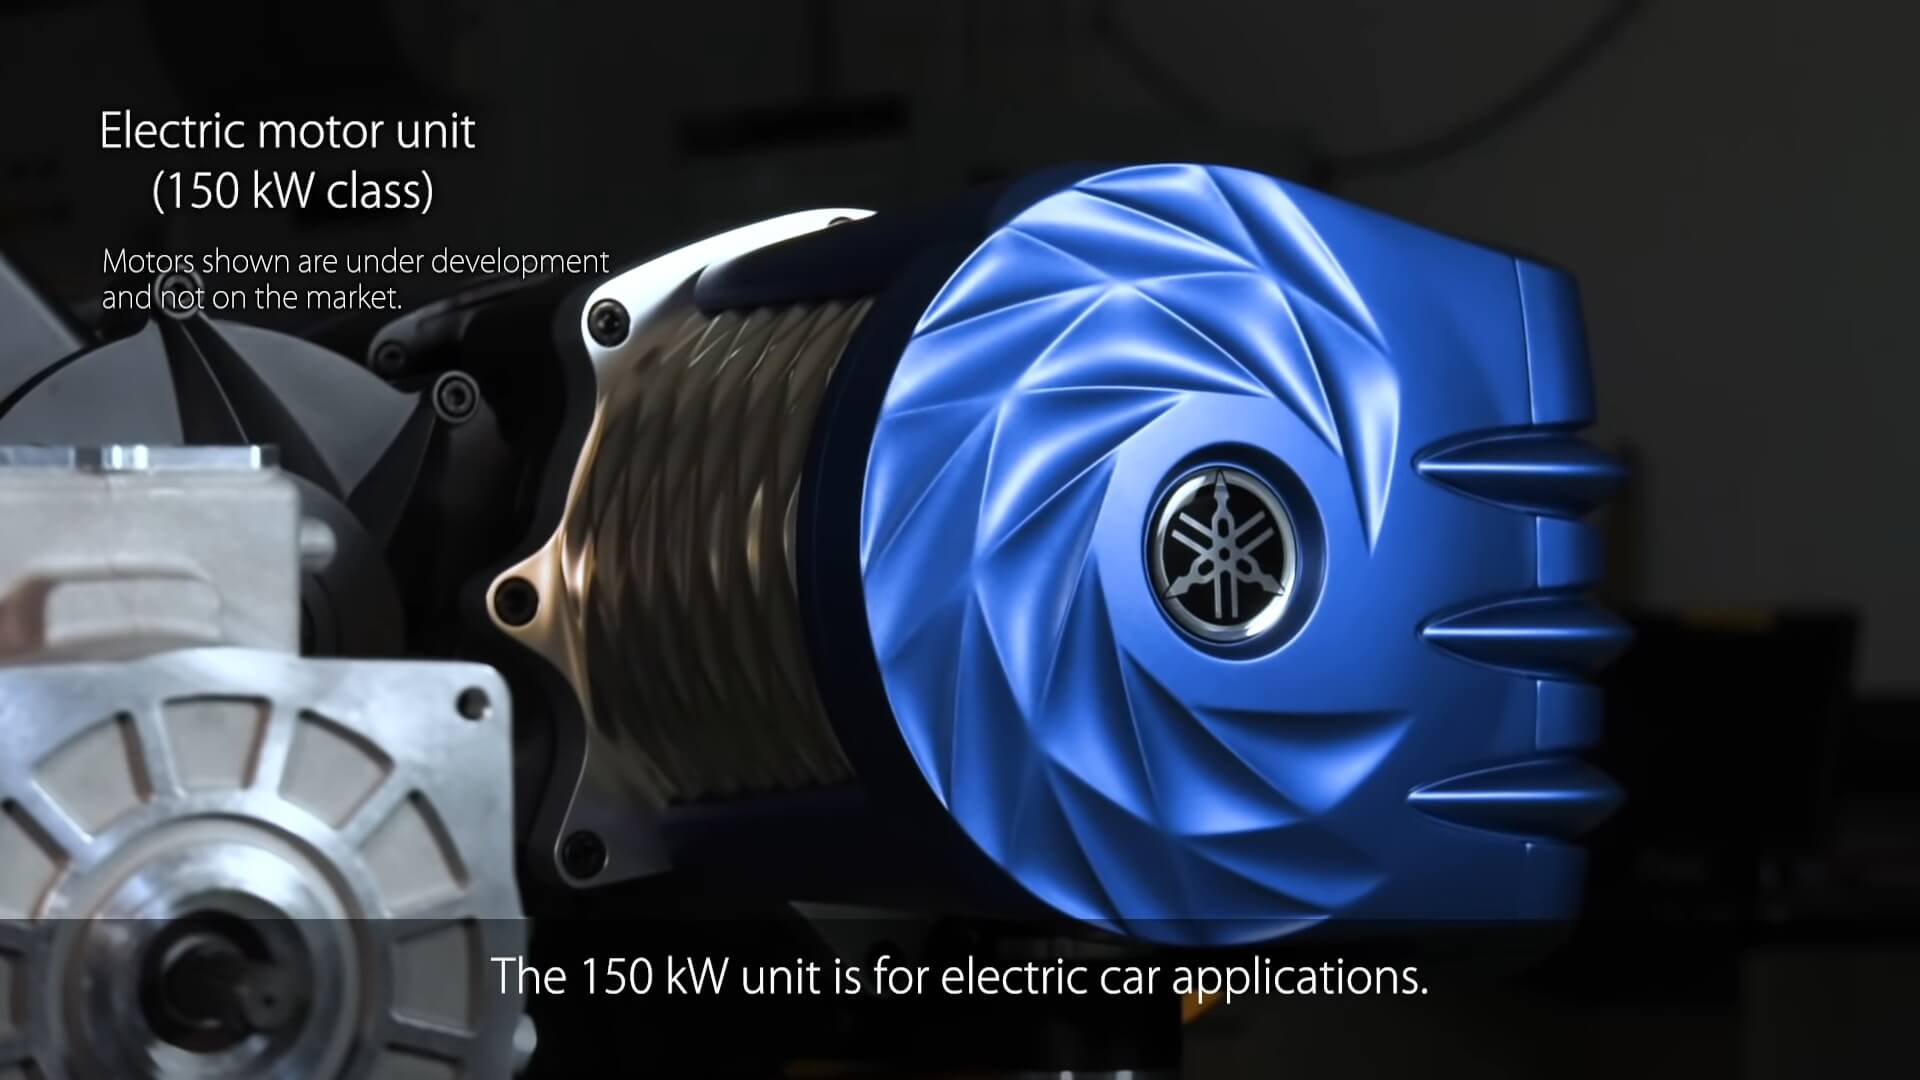 Yamaha демонстрирует электродвигатель мощностью 150 кВт, который был разработан для электрических автомобилей